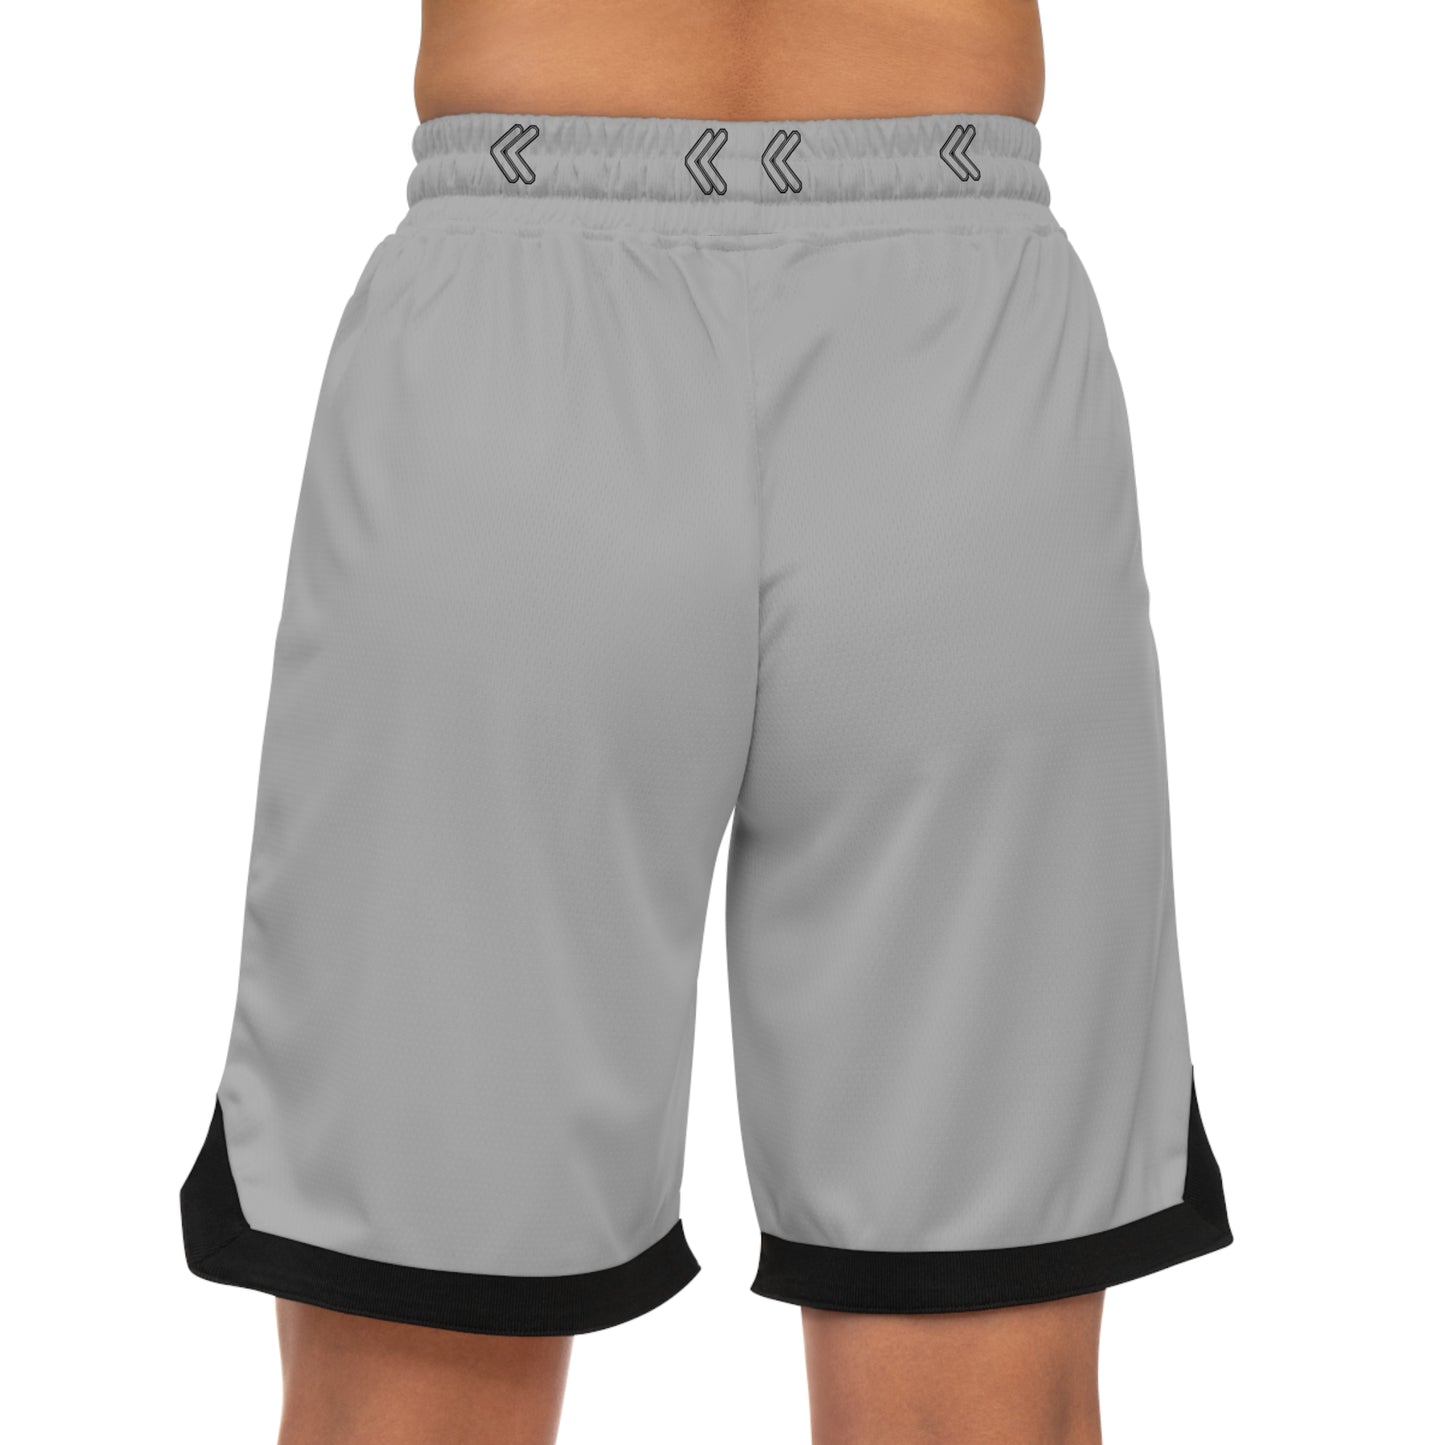 Basketball Rib Shorts